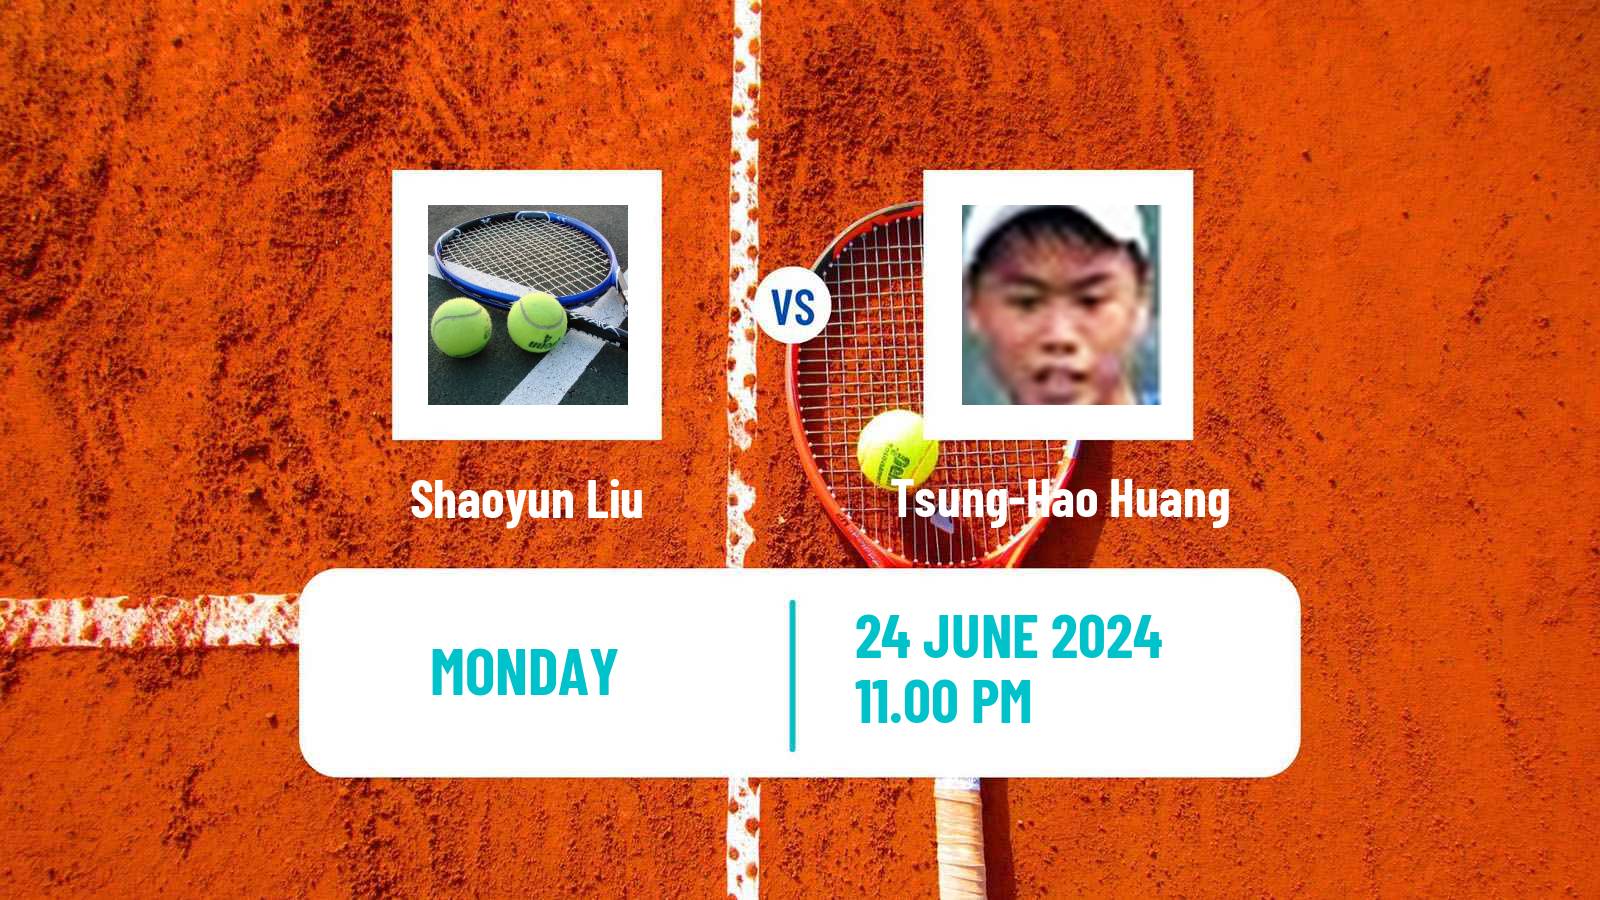 Tennis ITF M15 Tianjin Men Shaoyun Liu - Tsung-Hao Huang